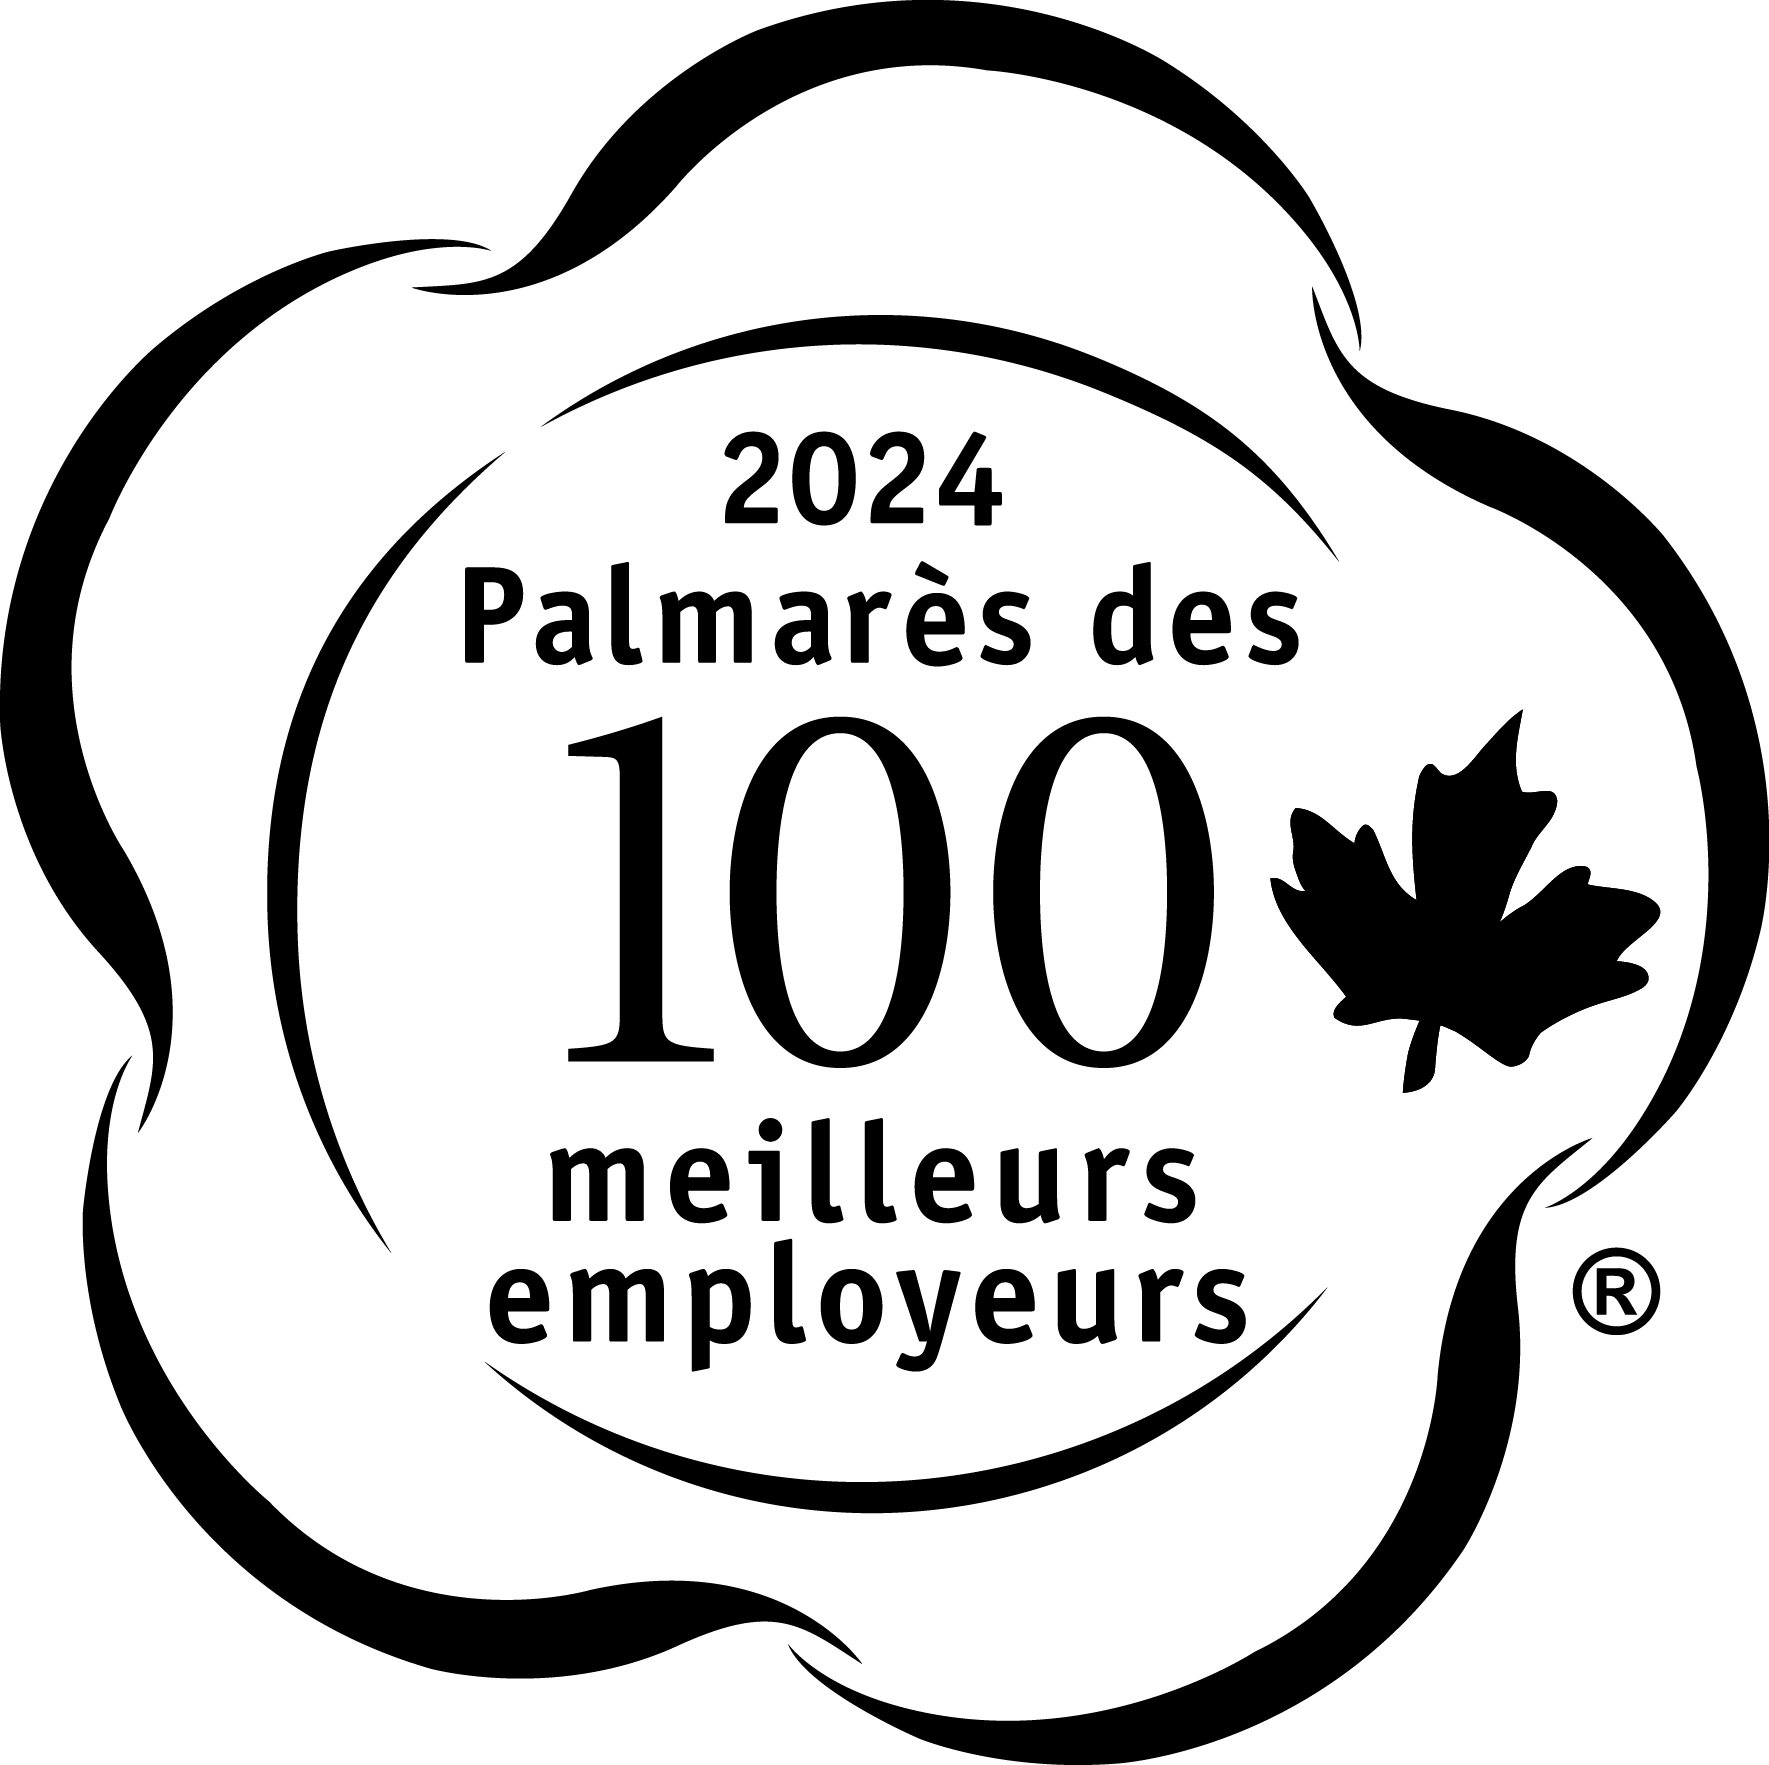 Palmarès des 100 meilleurs employeurs du Canada en 2021. Logo.